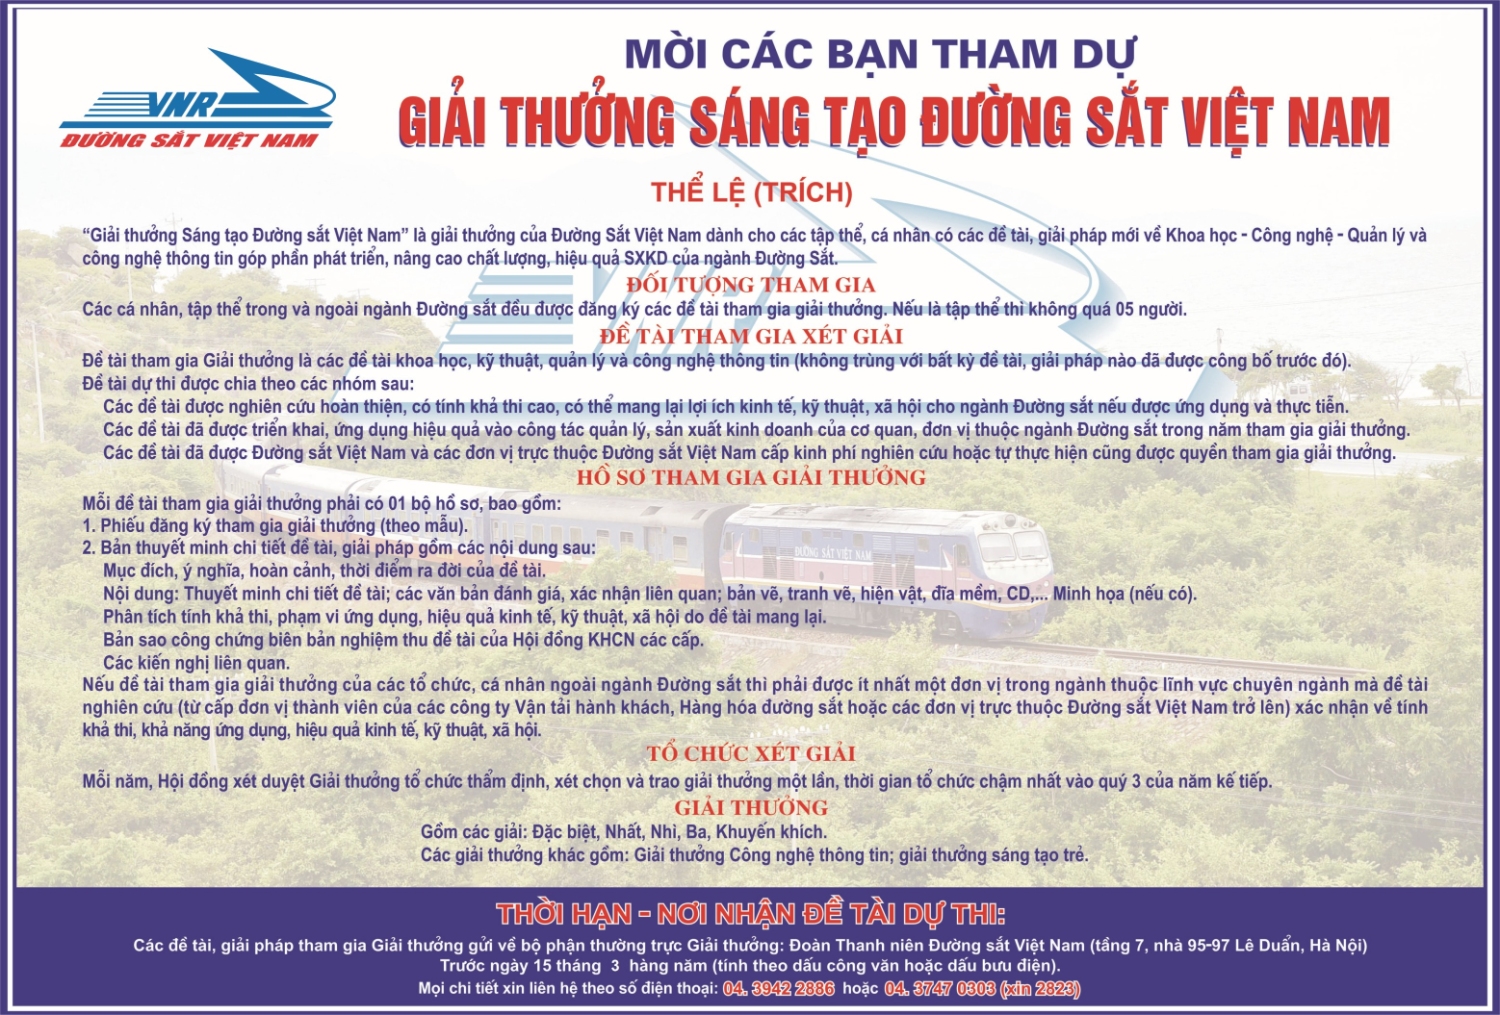 Giải thưởng sáng tạo Đường sắt Việt Nam năm 2019